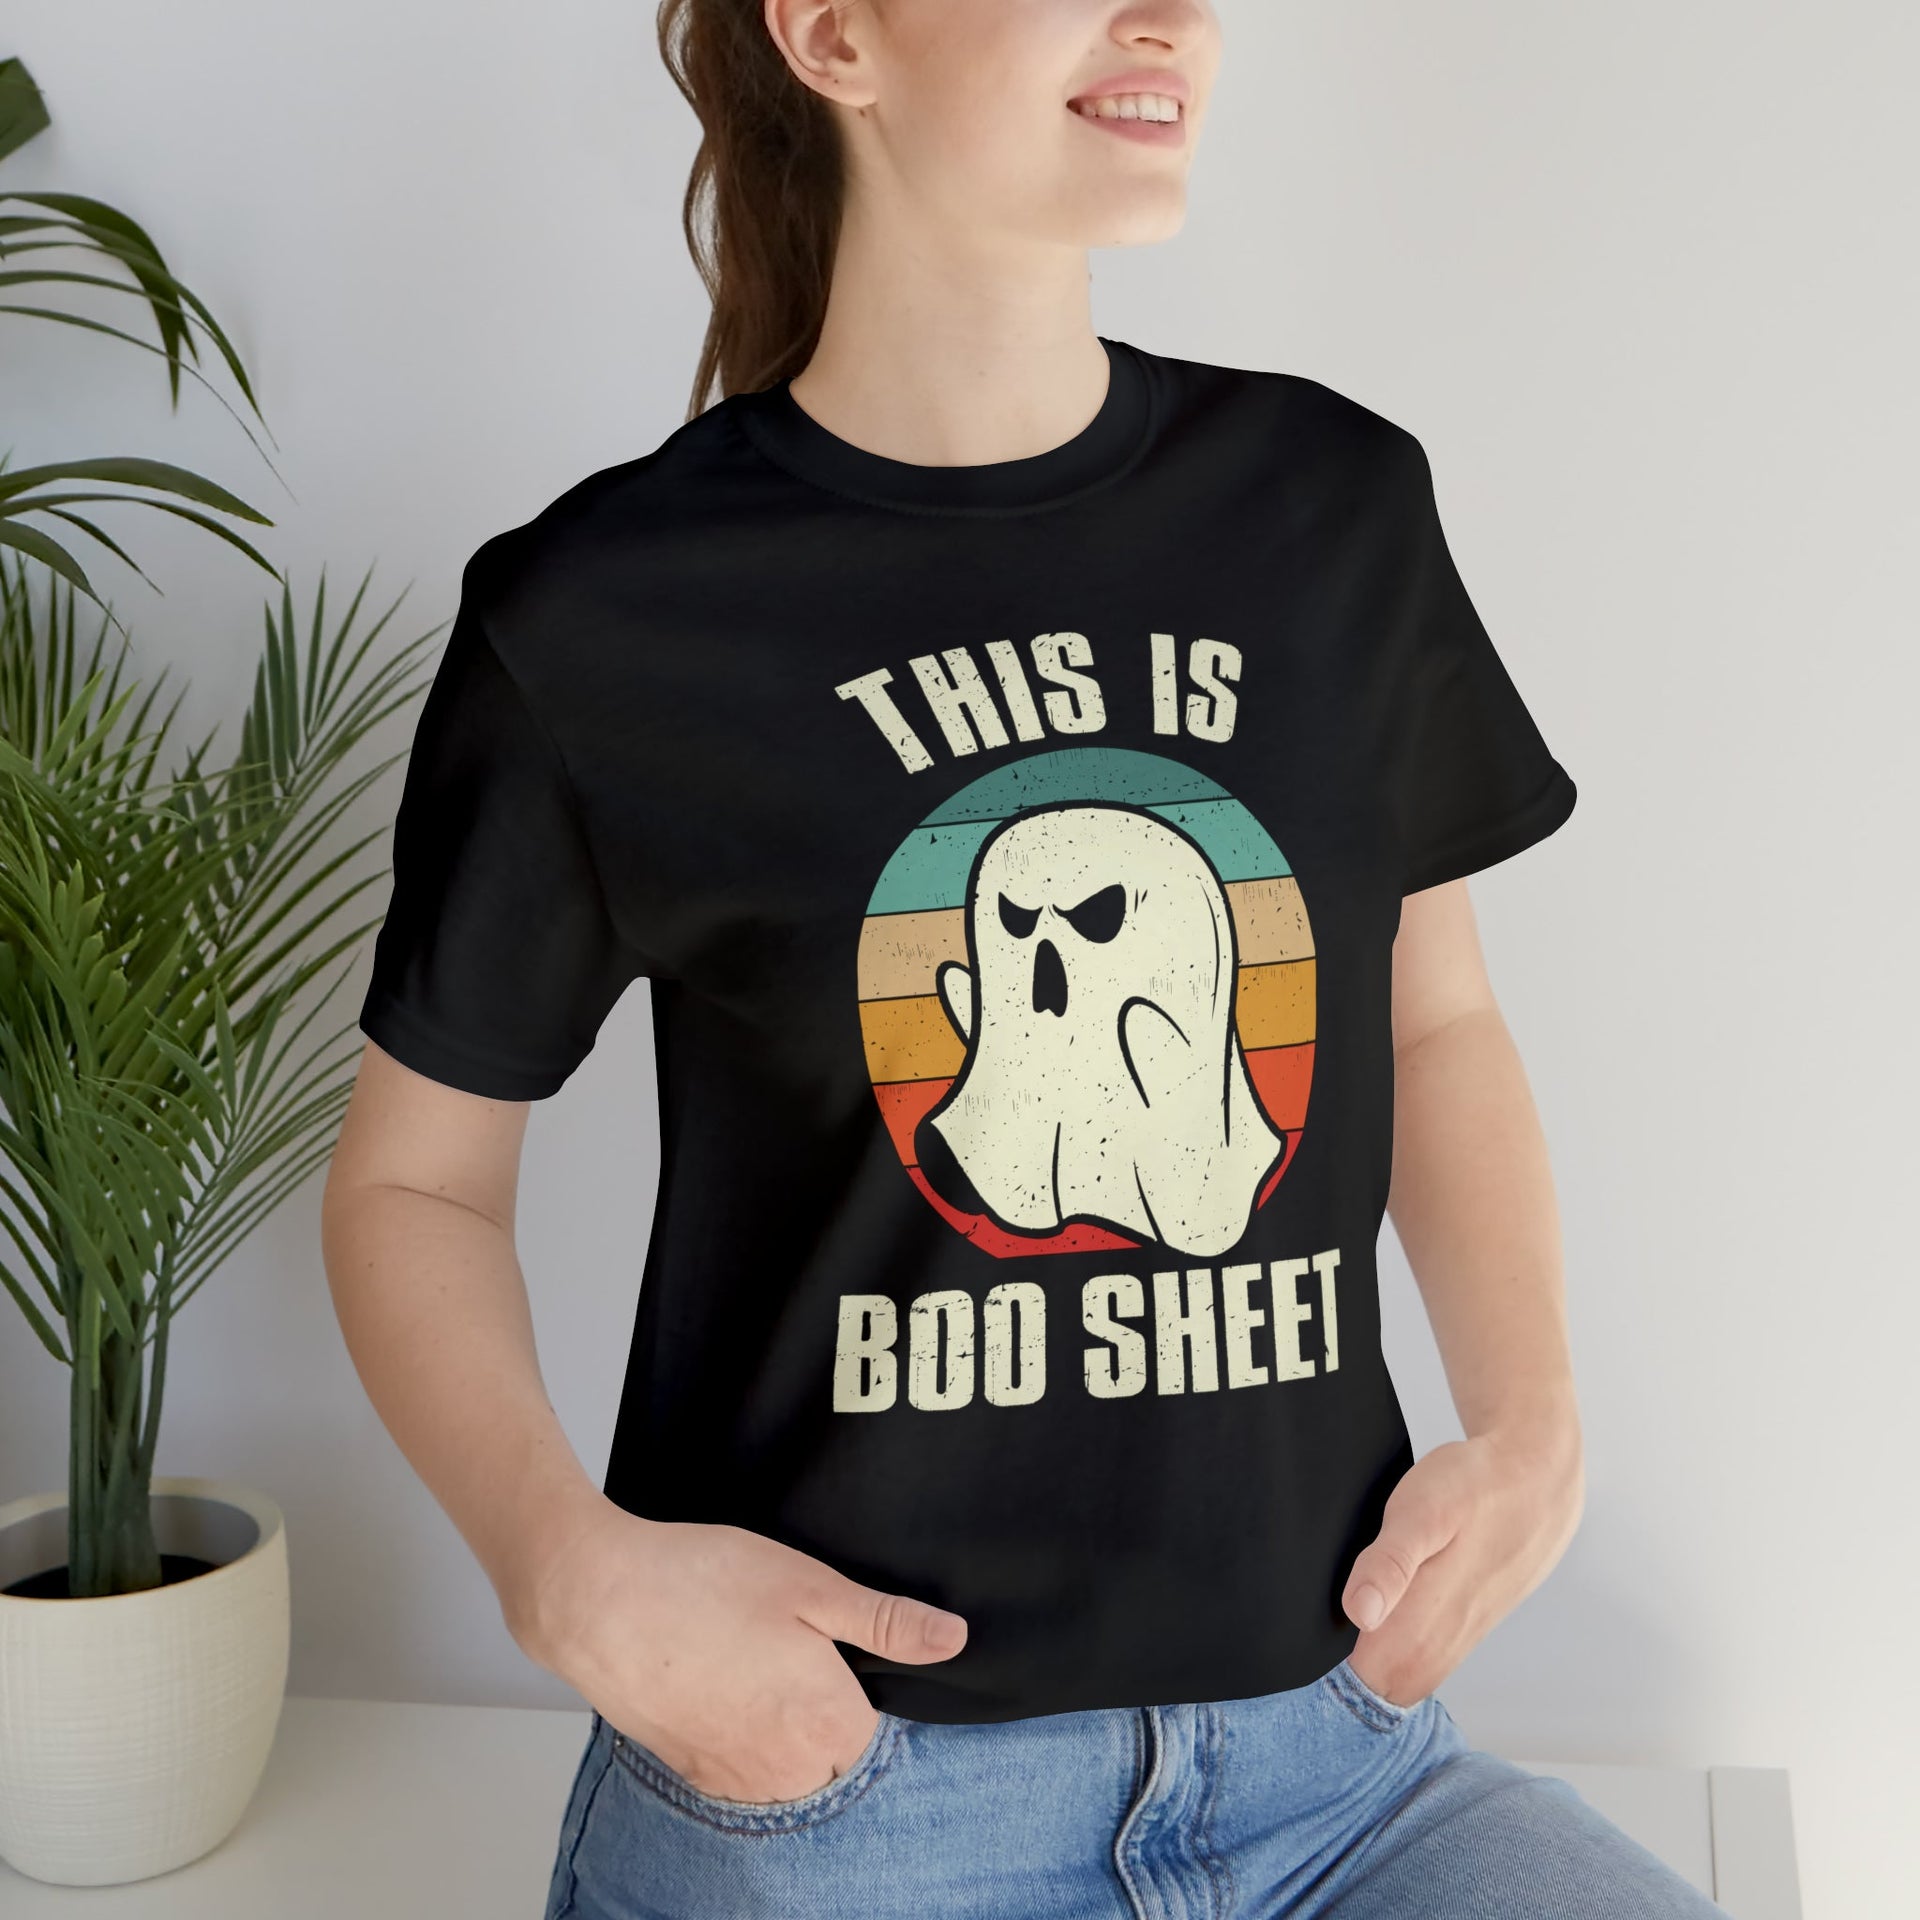 Boo Sheet Tee T-Shirt by Printify | Akron Pride Custom Tees